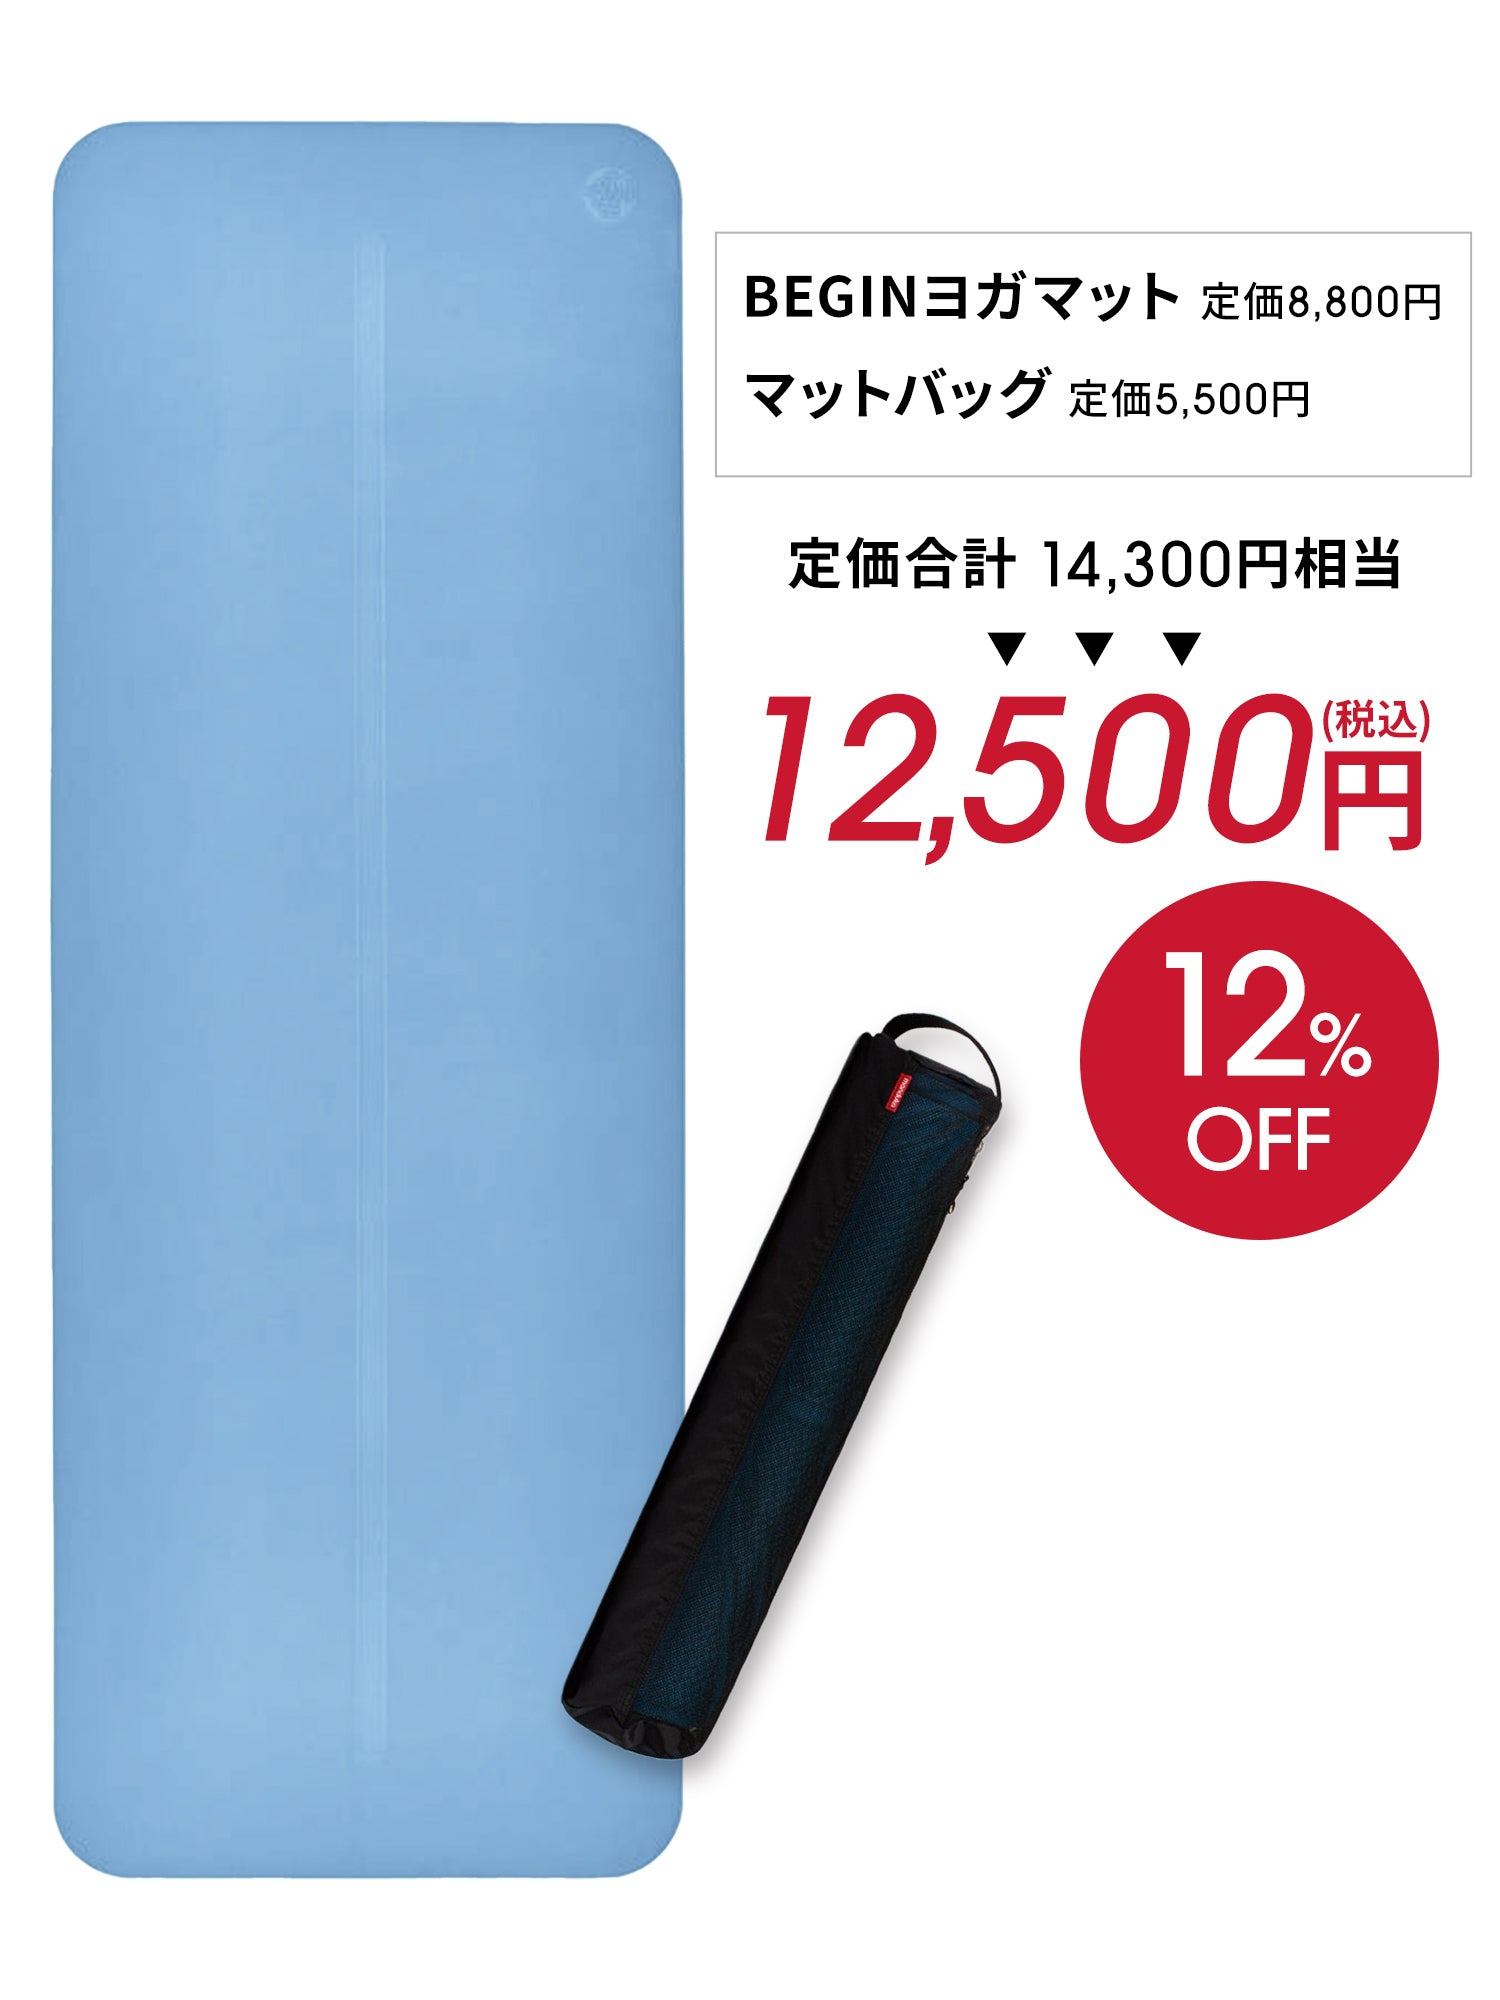 Manduka ヨガセット A【Beginヨガマット×マットバッグ】[SALE 1800円 